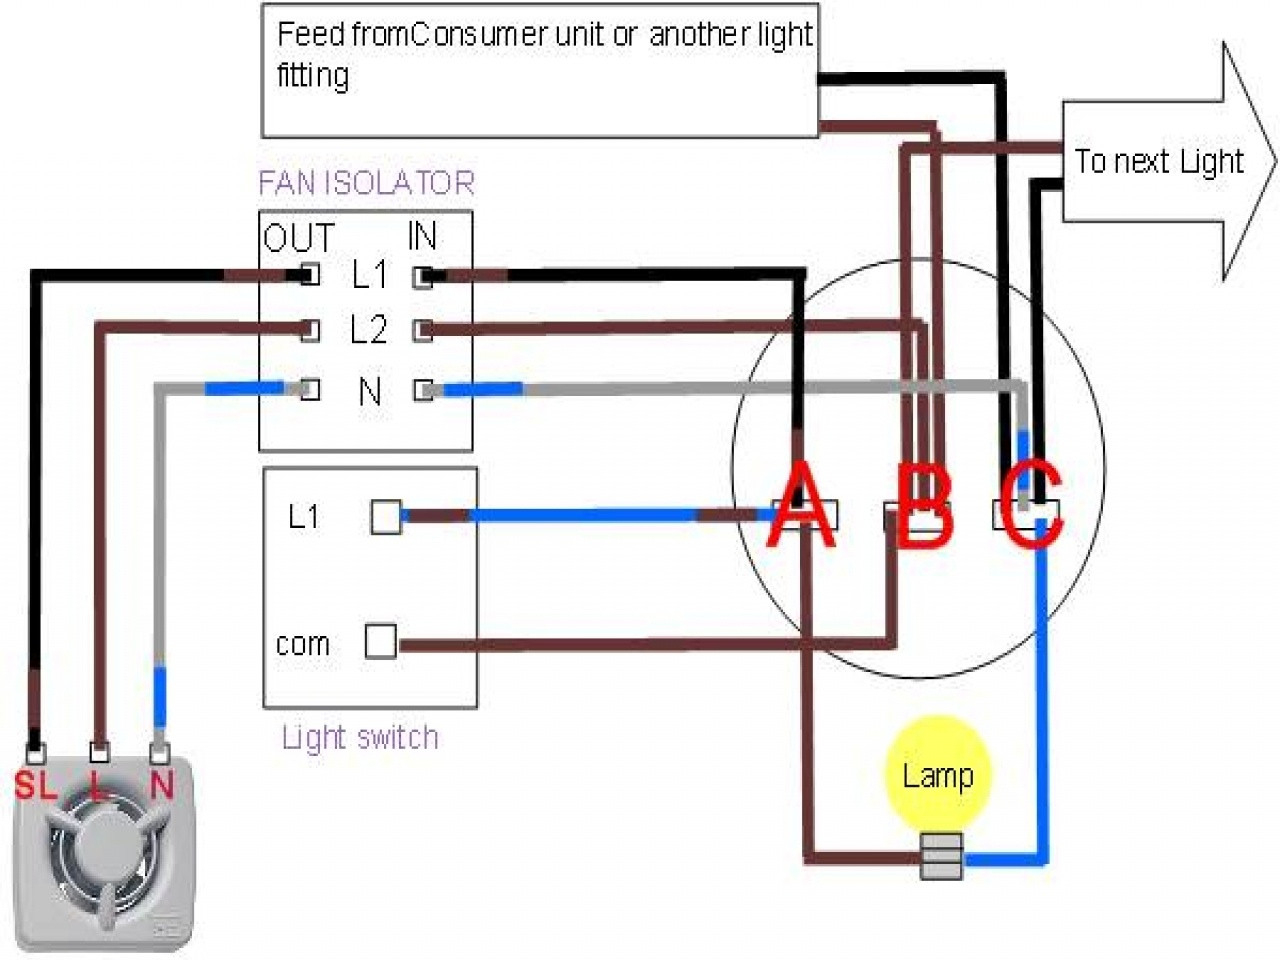 Wiring Diagram For Broan Exhaust Fan Light | Wiring Diagram - Wiring A Bathroom Fan And Light Diagram